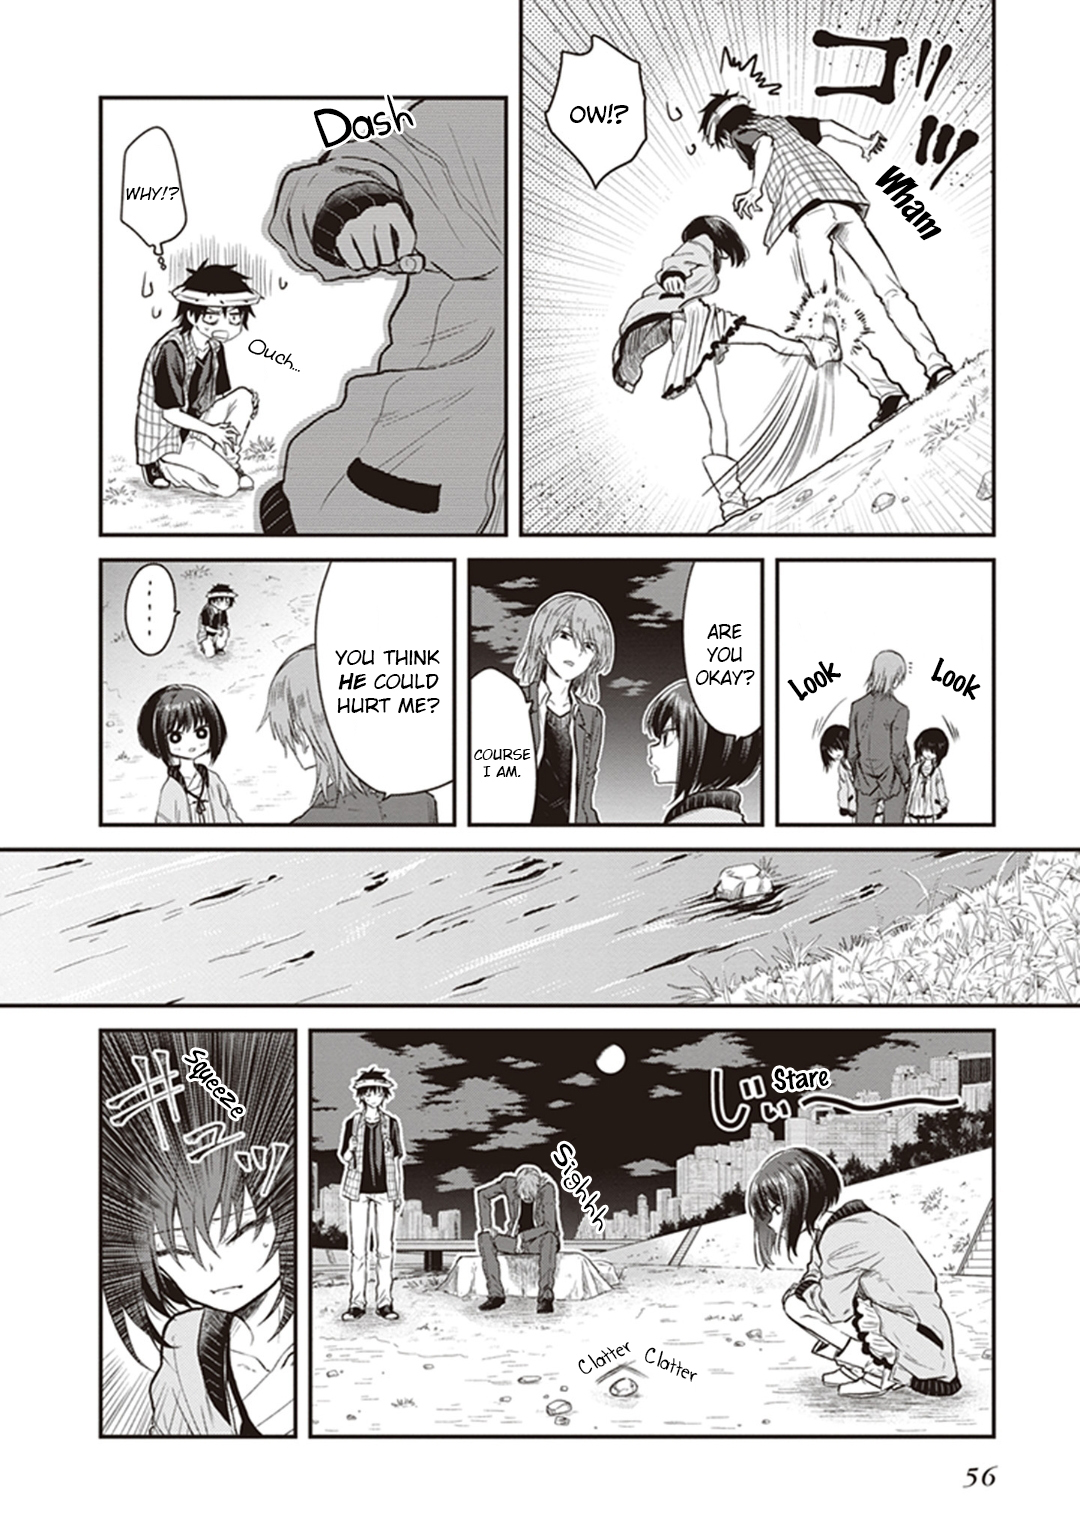 Toaru Majutsu no Index Gaiden: Toaru Kagaku no Dark Matter Vol. 1 Ch. 2